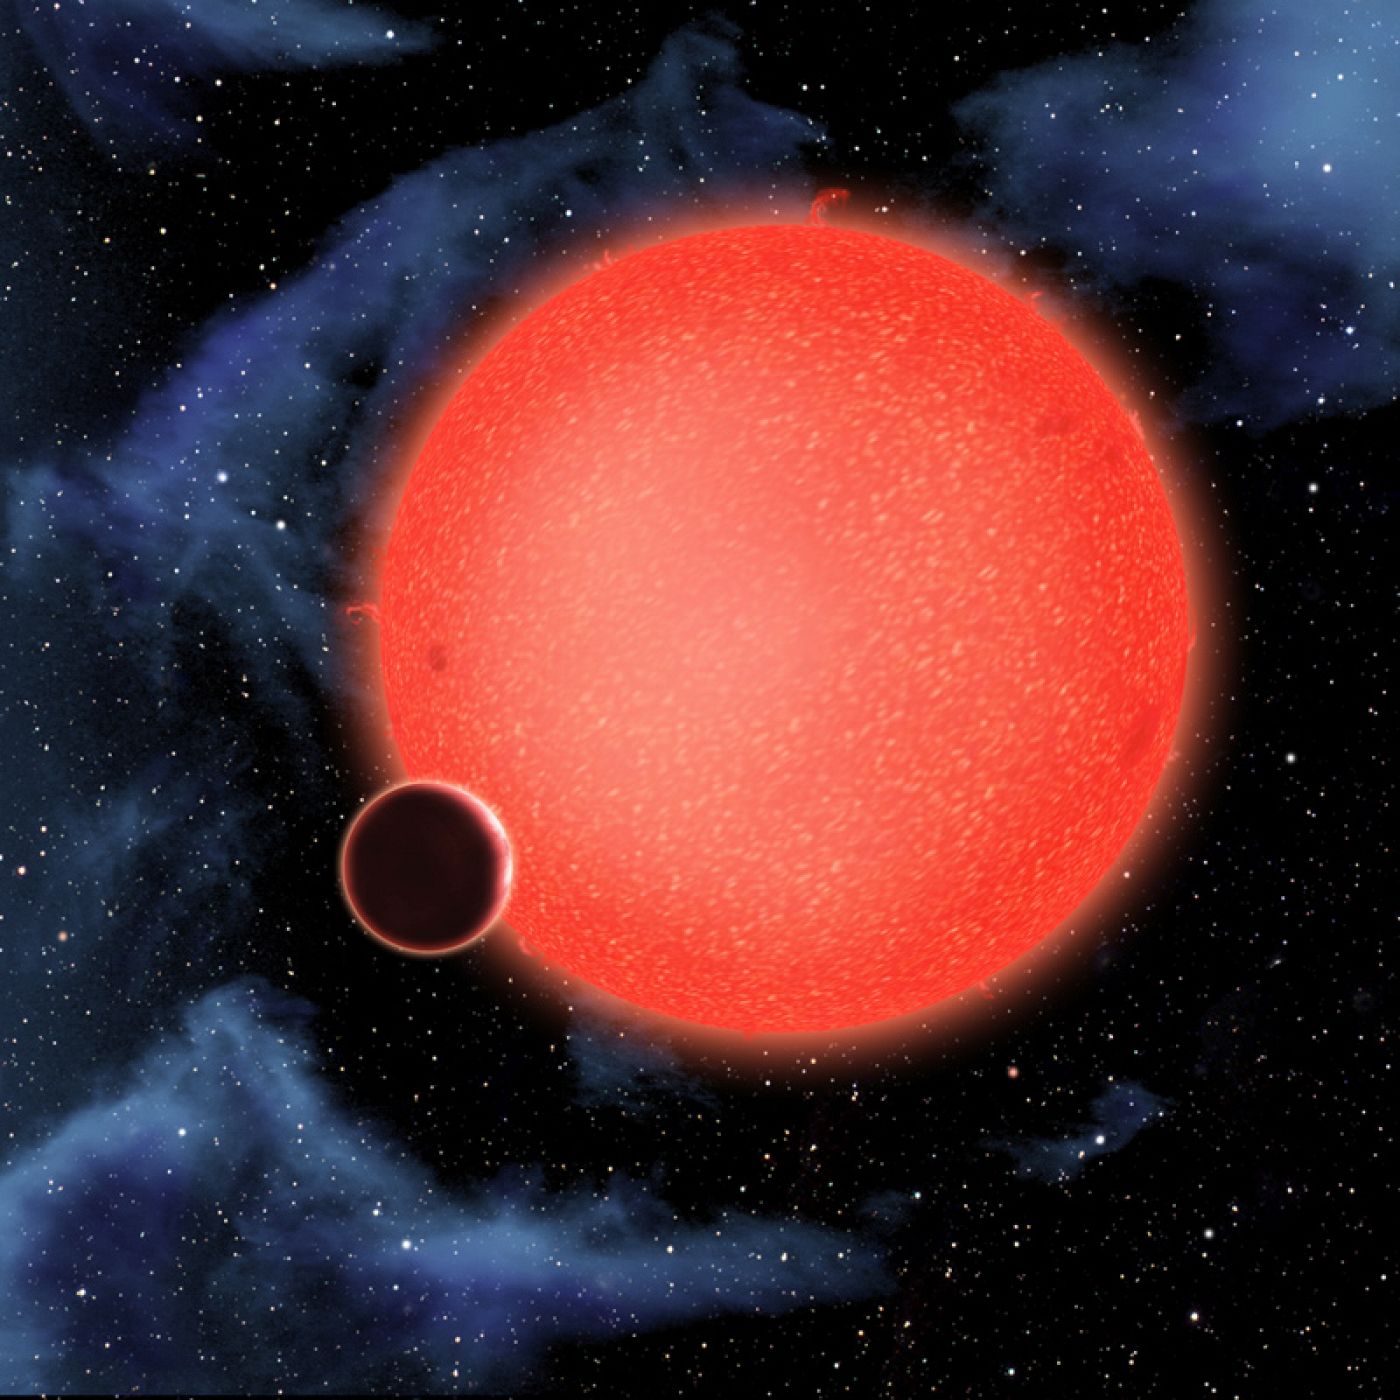 GJ1214b tiene alrededor de 2,7 veces el diámetro terrestre y pesa unas siete veces más. Orbita a una enana roja cada 38 horas a una distancia de más de 2 millones de kilómetros.